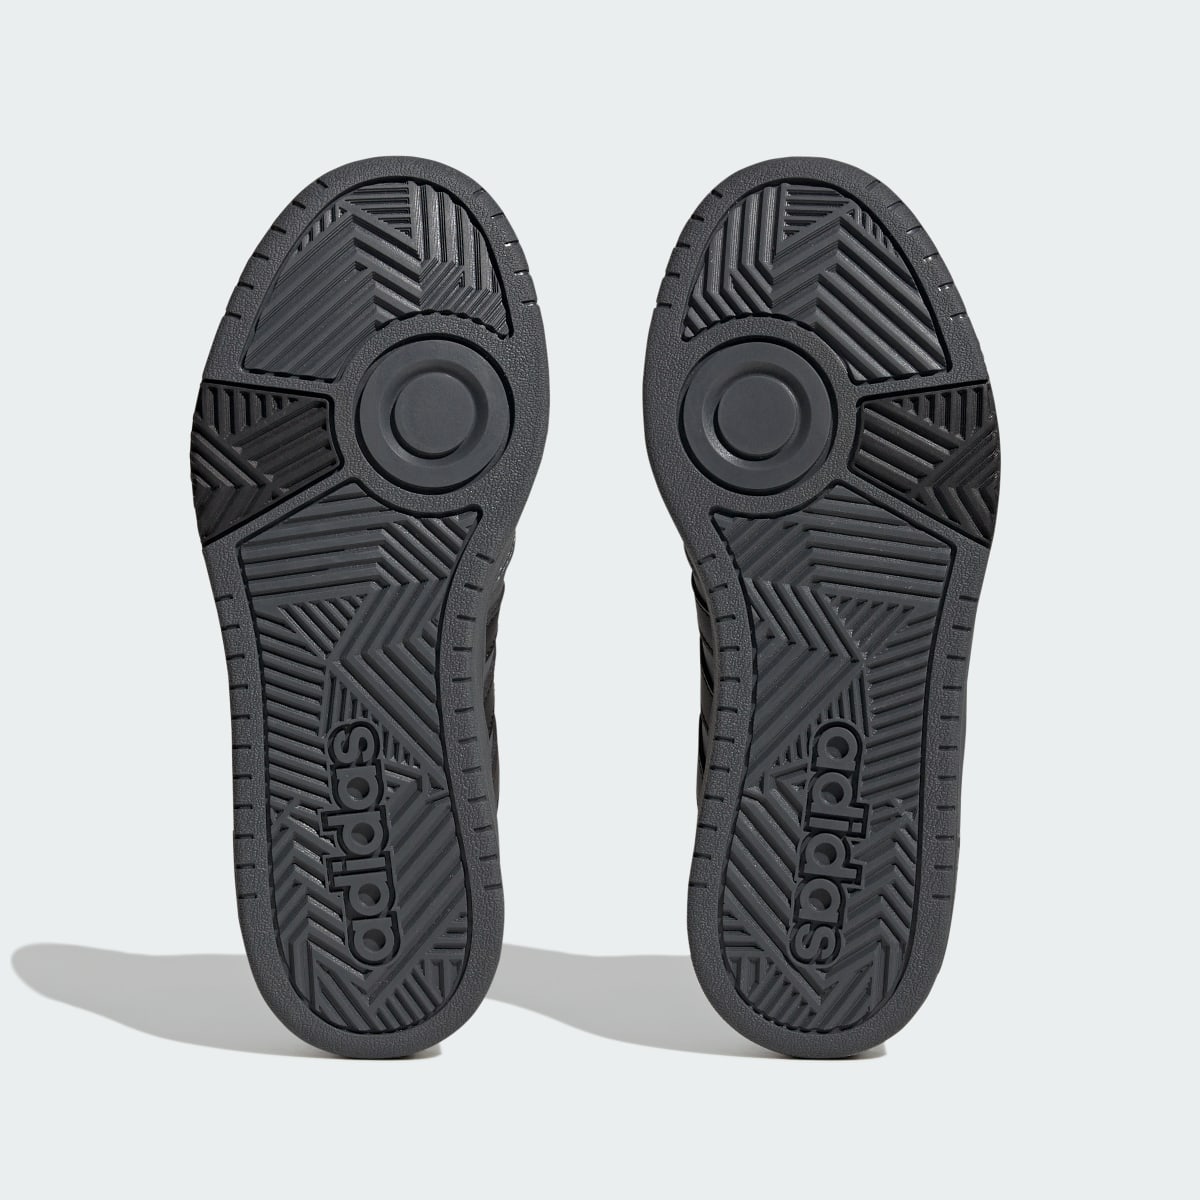 Adidas Sapatilhas de Inverno com Forro em Pelagem para Lifestyle e Basquetebol Hoops 3.0. 4